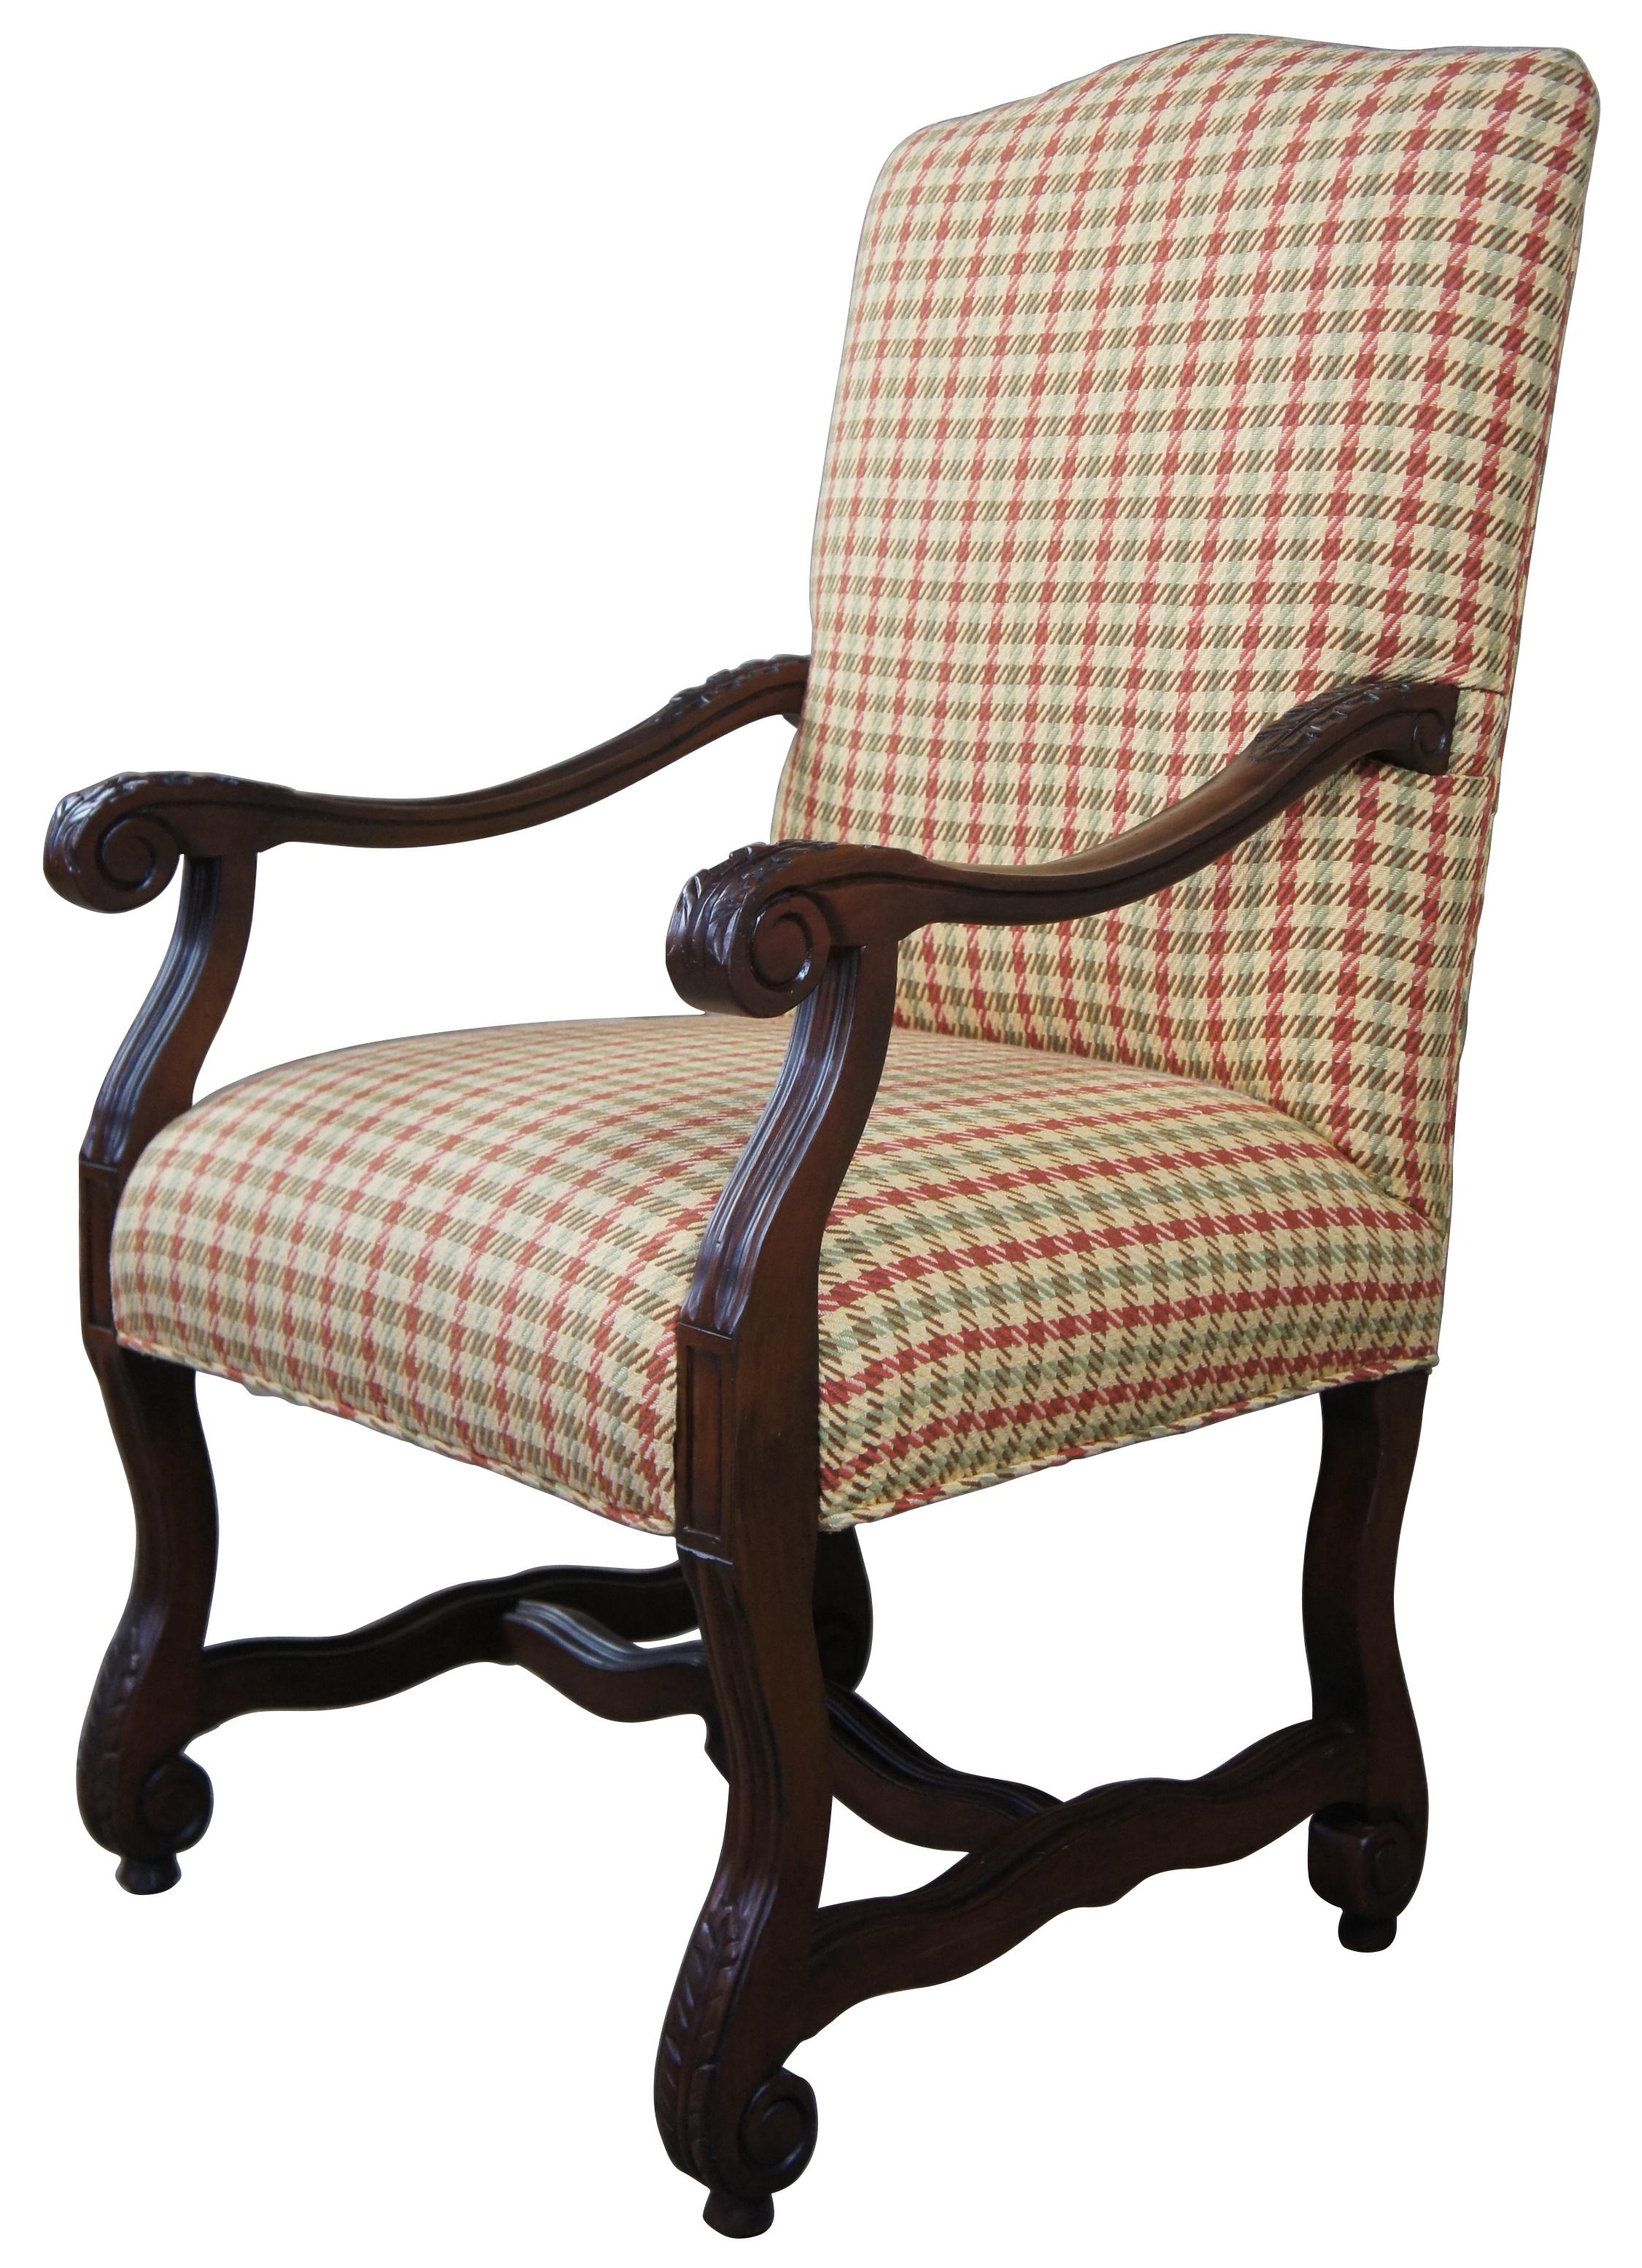 Sessel im toskanischen Stil mit geschwungenen Armen und Beinen. Mit Akanthusblatt-Schnitzereien und einem schlangenförmigen Gestell. Ideal für den Einsatz in der Bibliothek oder im Wohnbereich. 
 